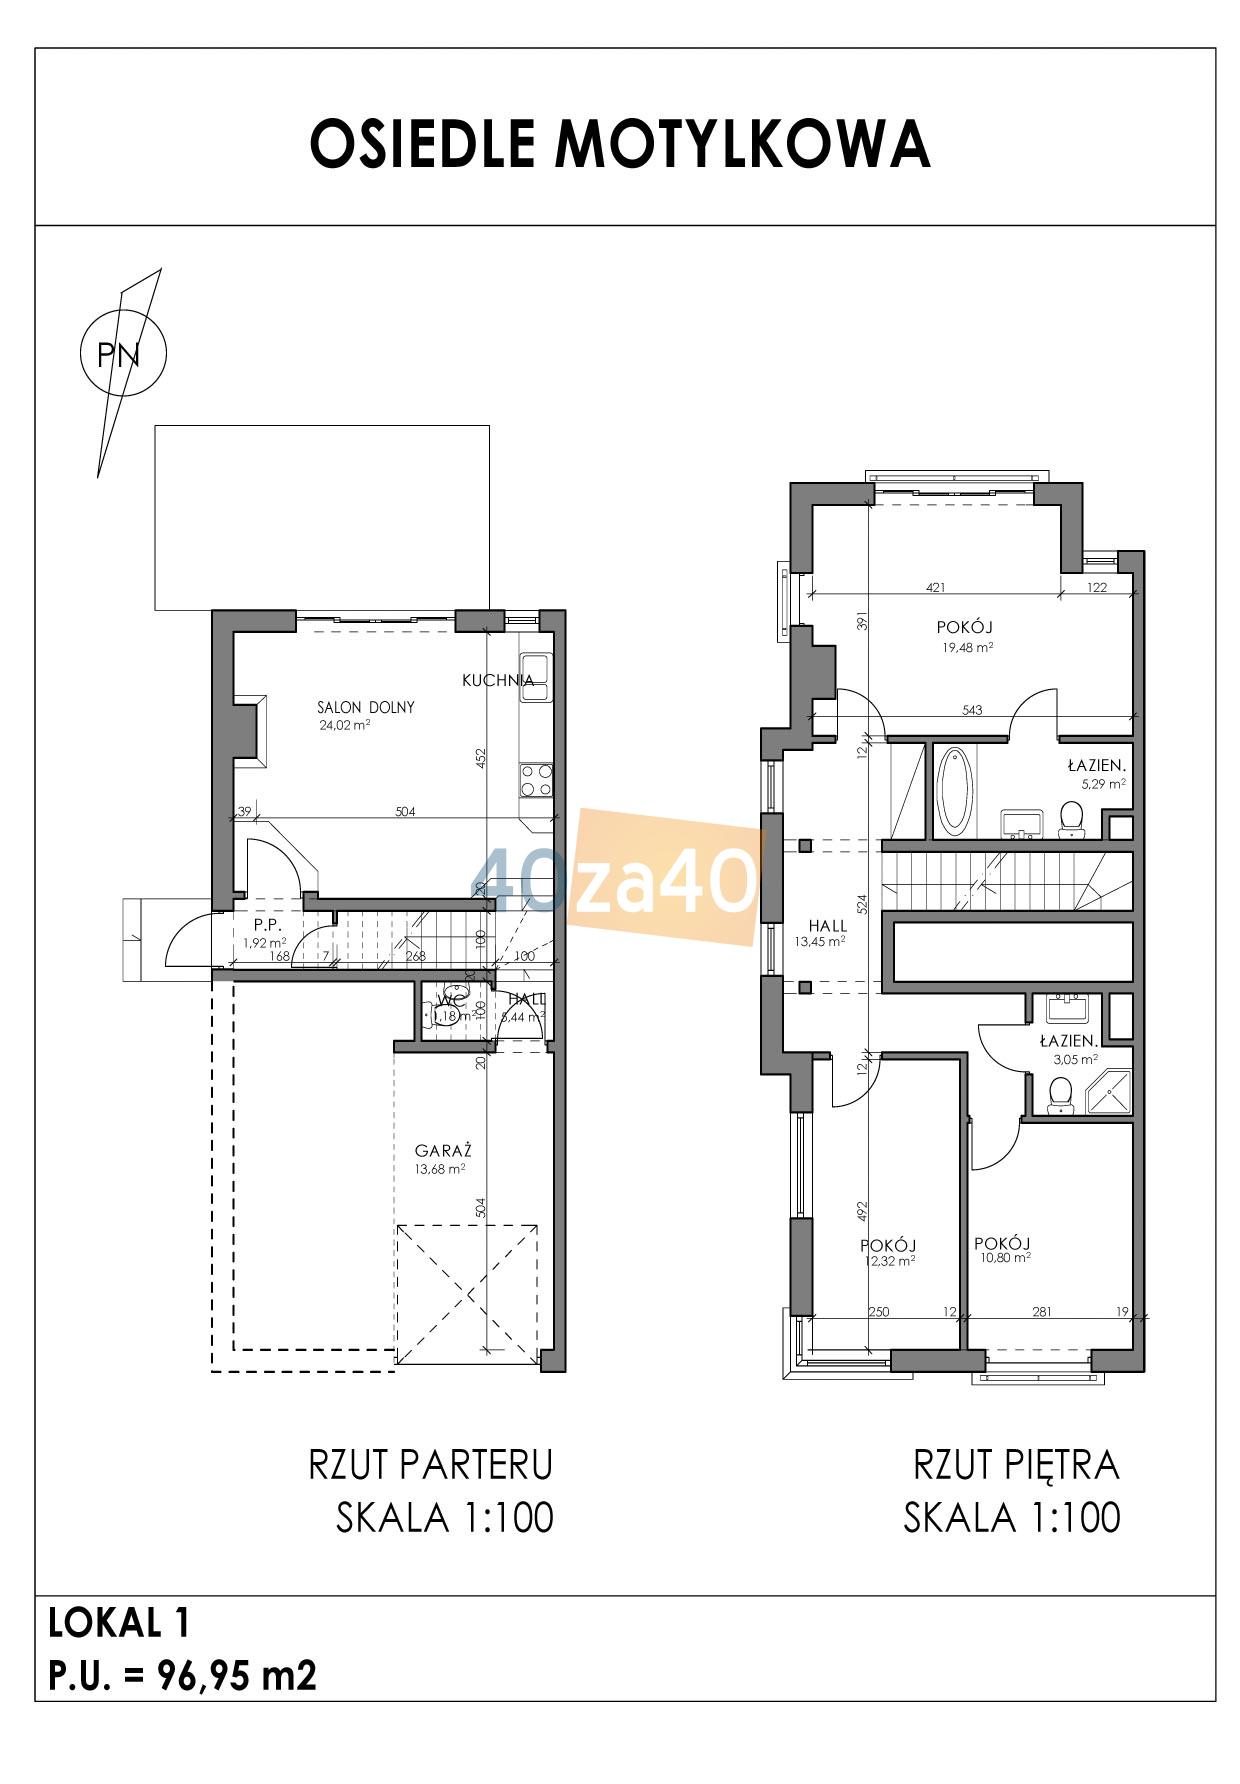 Mieszkanie na sprzedaż, pokoje: 4, cena: 565 000,00 PLN, Warszawa, kontakt: 505 283 785